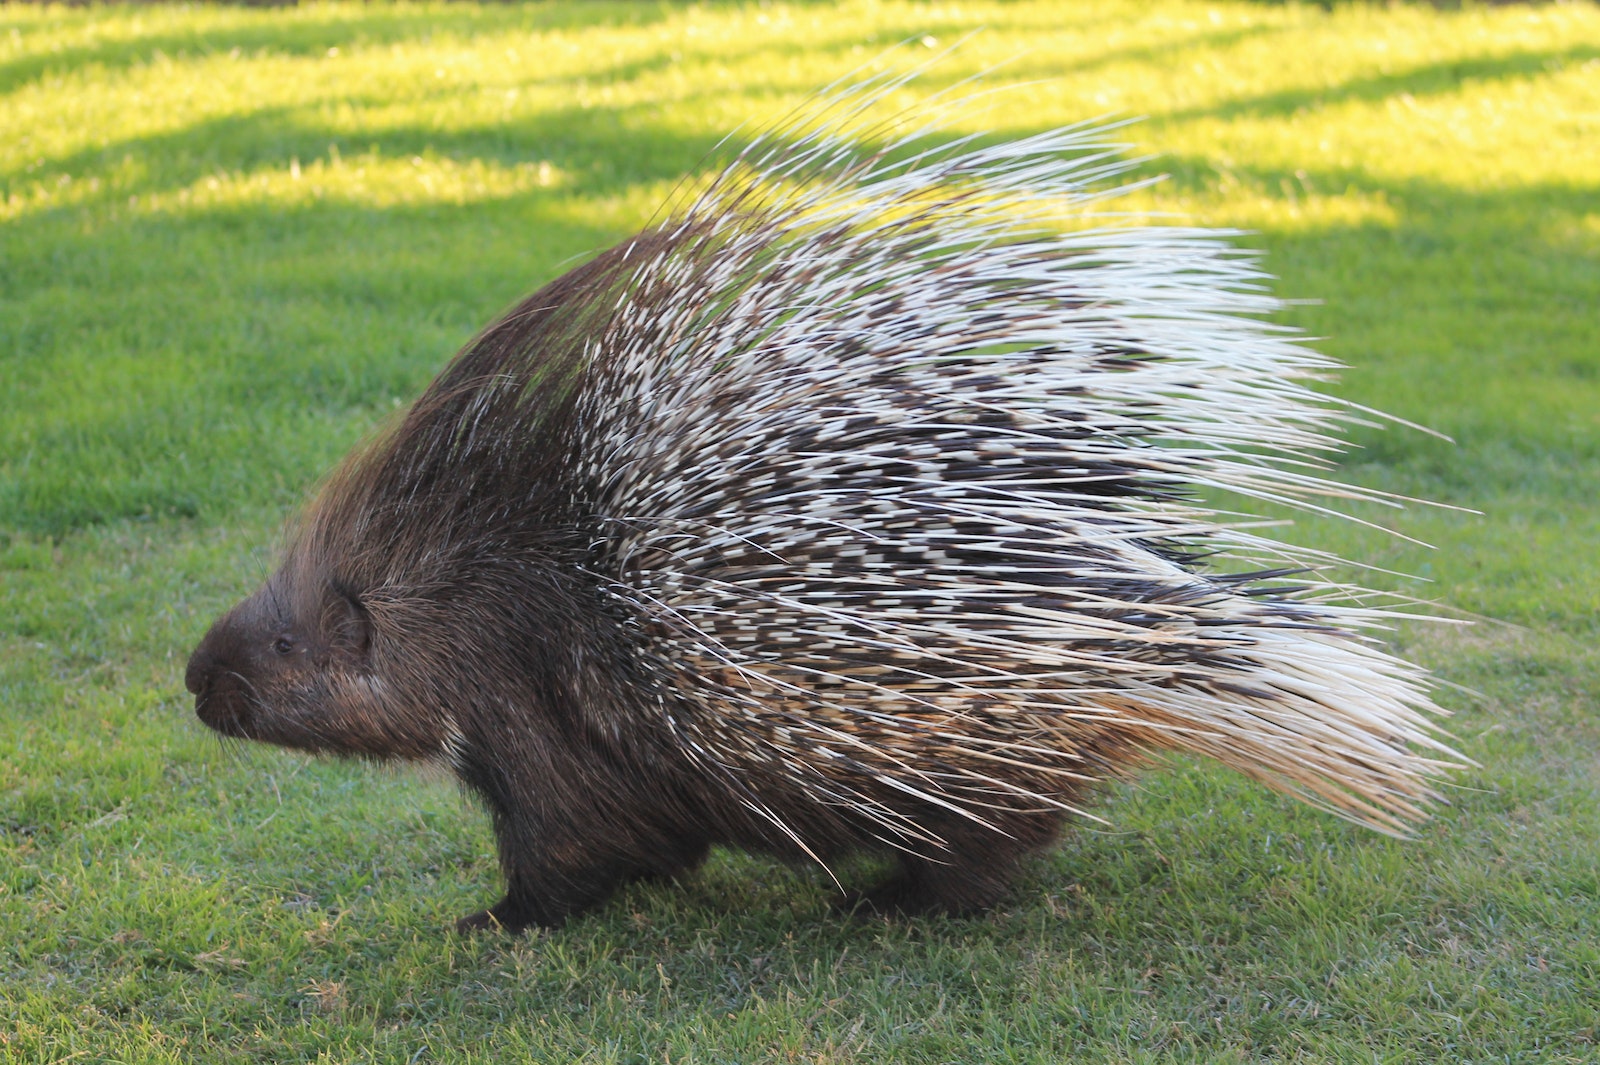 Close-Up Photo of a Porcupine